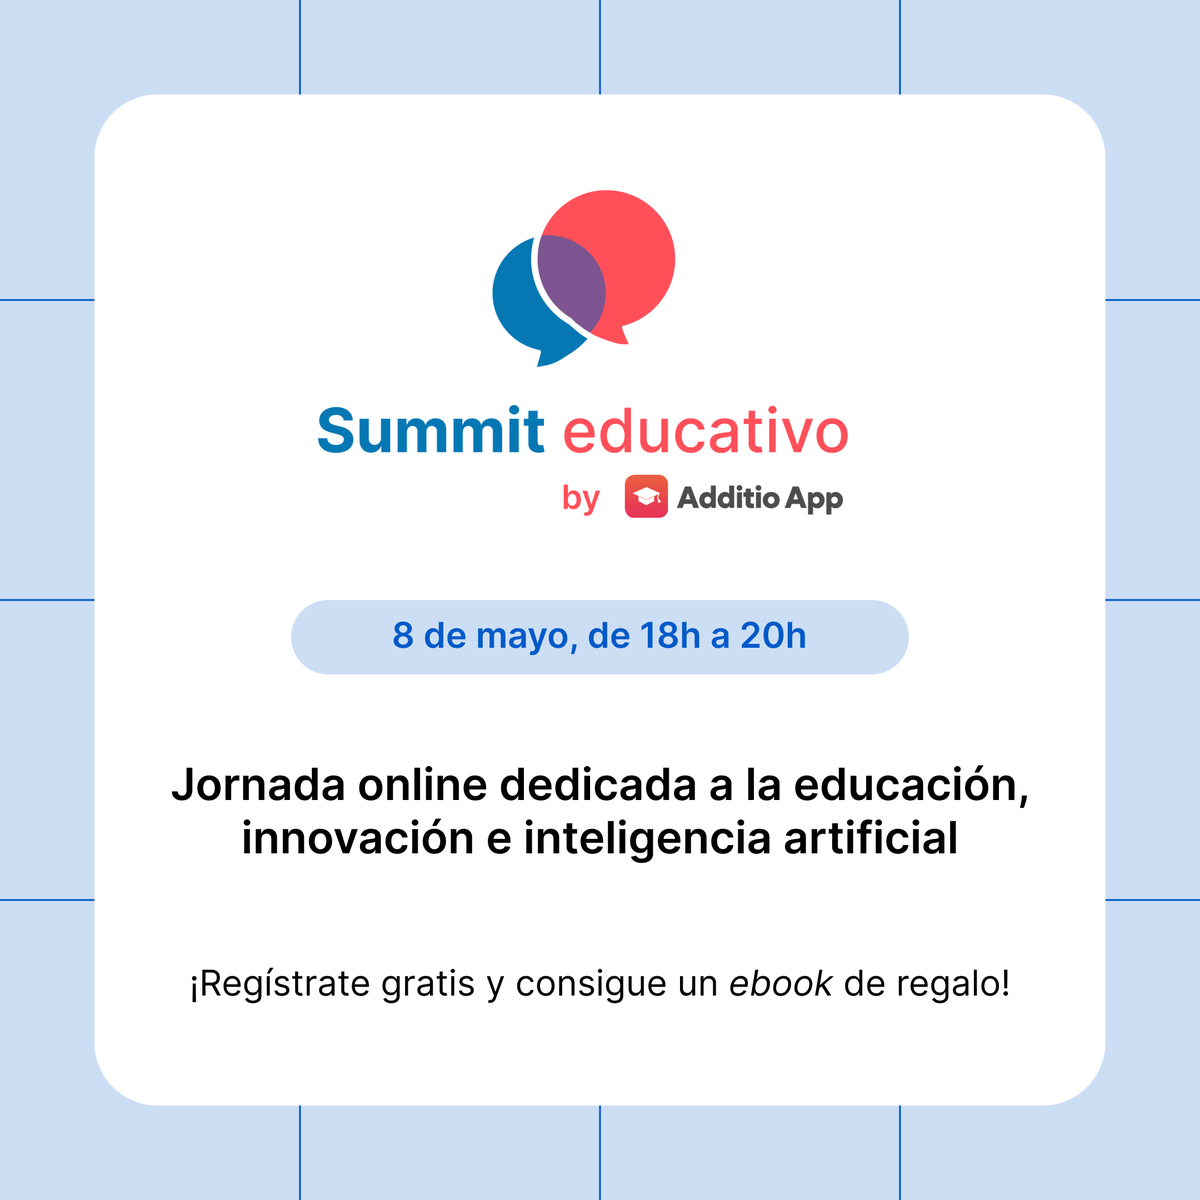 Ya os podemos contar todo🚀 ¡Llega el primer Summit Educativo by Additio App! ➡️El miércoles 8 de mayo, de 18h a 20h, en formato online, tendremos ponencias, charlas y mesas redondas sobre educación, tecnología e inteligencia artificial🤖